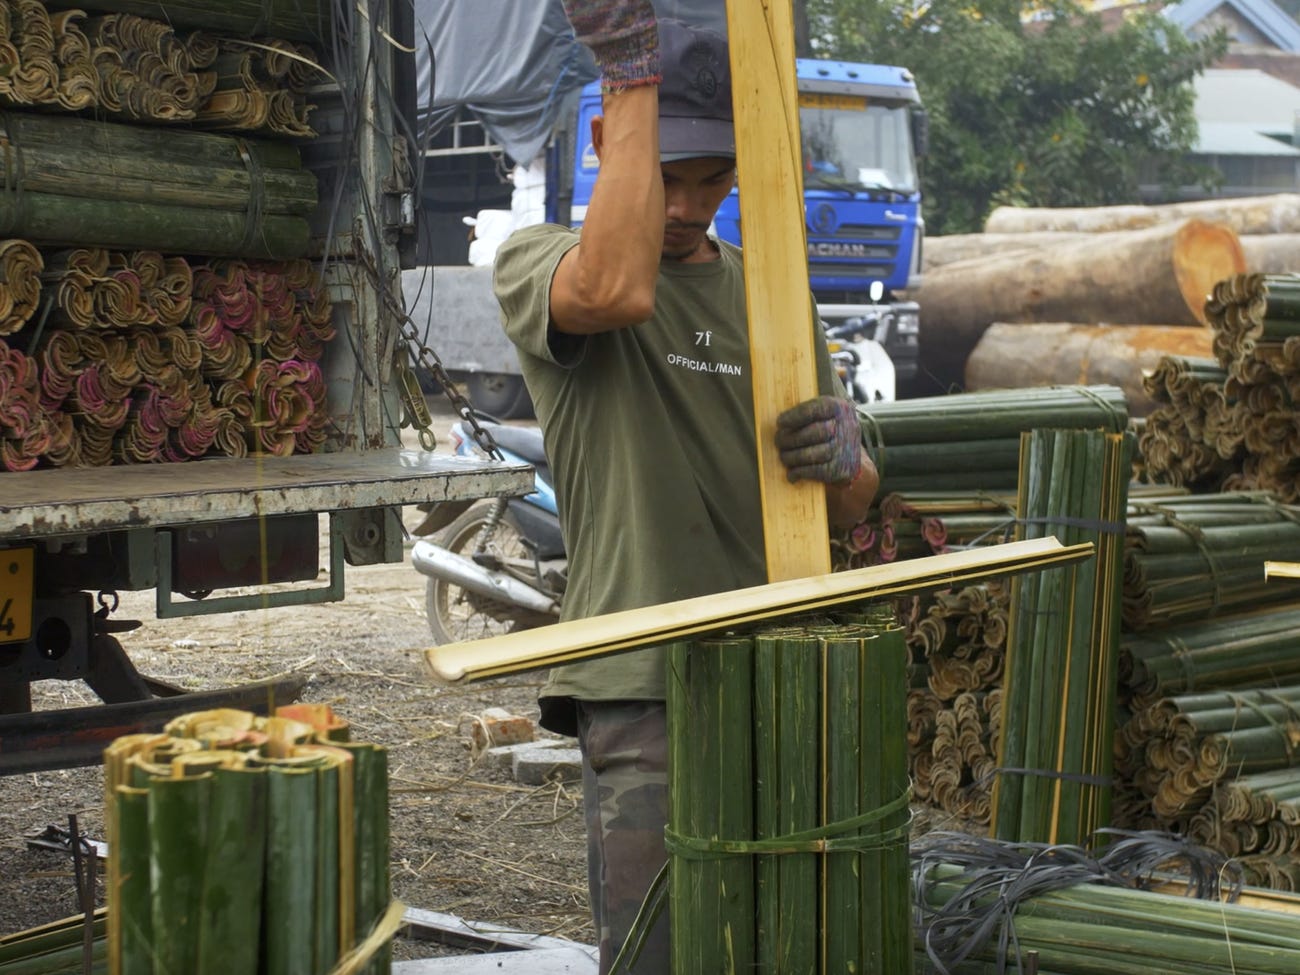 Quảng Phú Cầu - Làng nghề làm hương trăm tuổi của Việt Nam gây ấn tượng trên báo nước ngoài